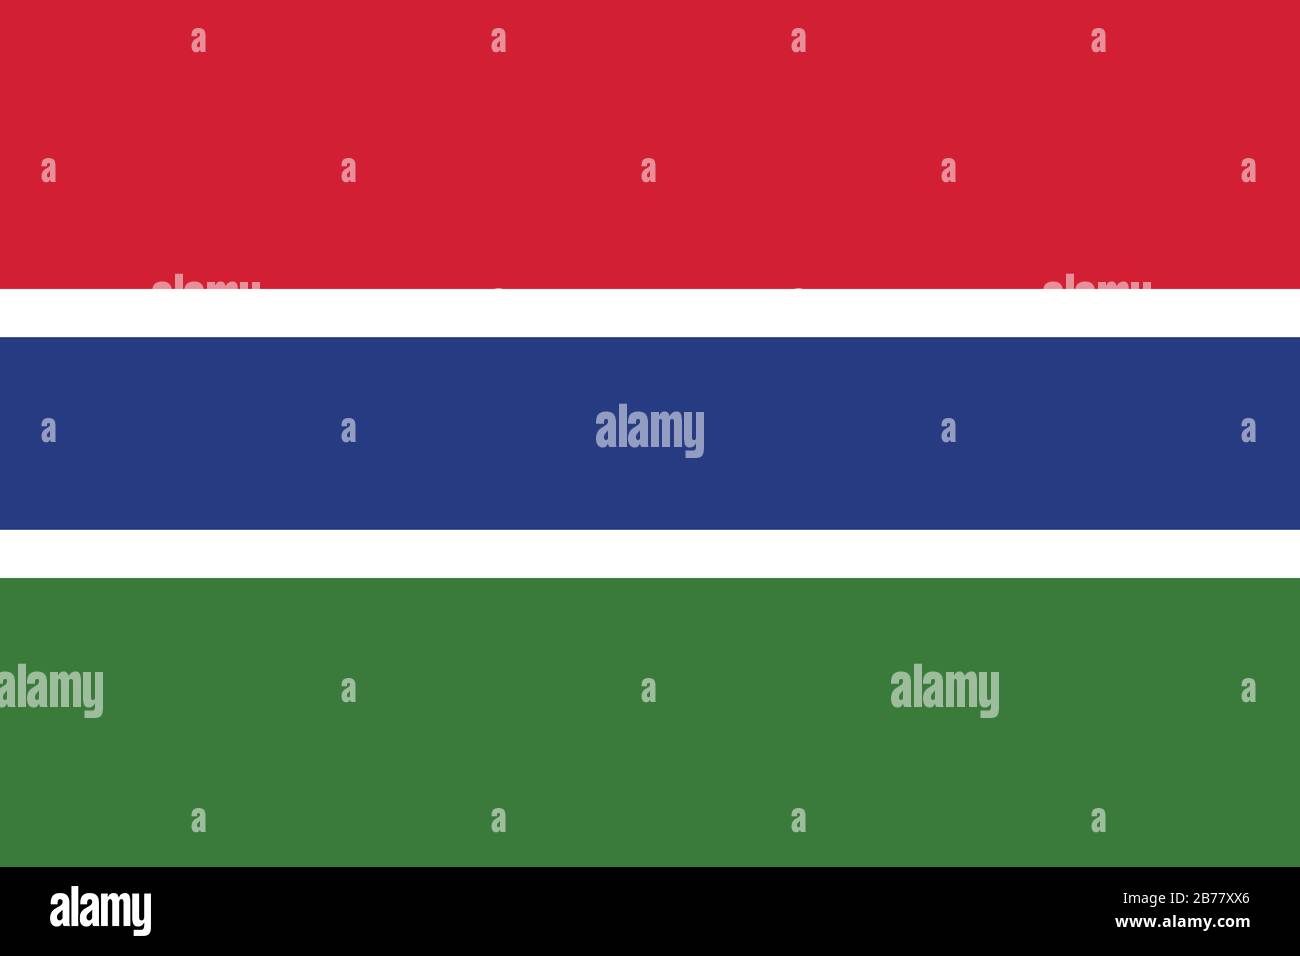 Flagge Gambias - Standardverhältnis der gambischen Flagge - True RGB-Farbmodus Stockfoto